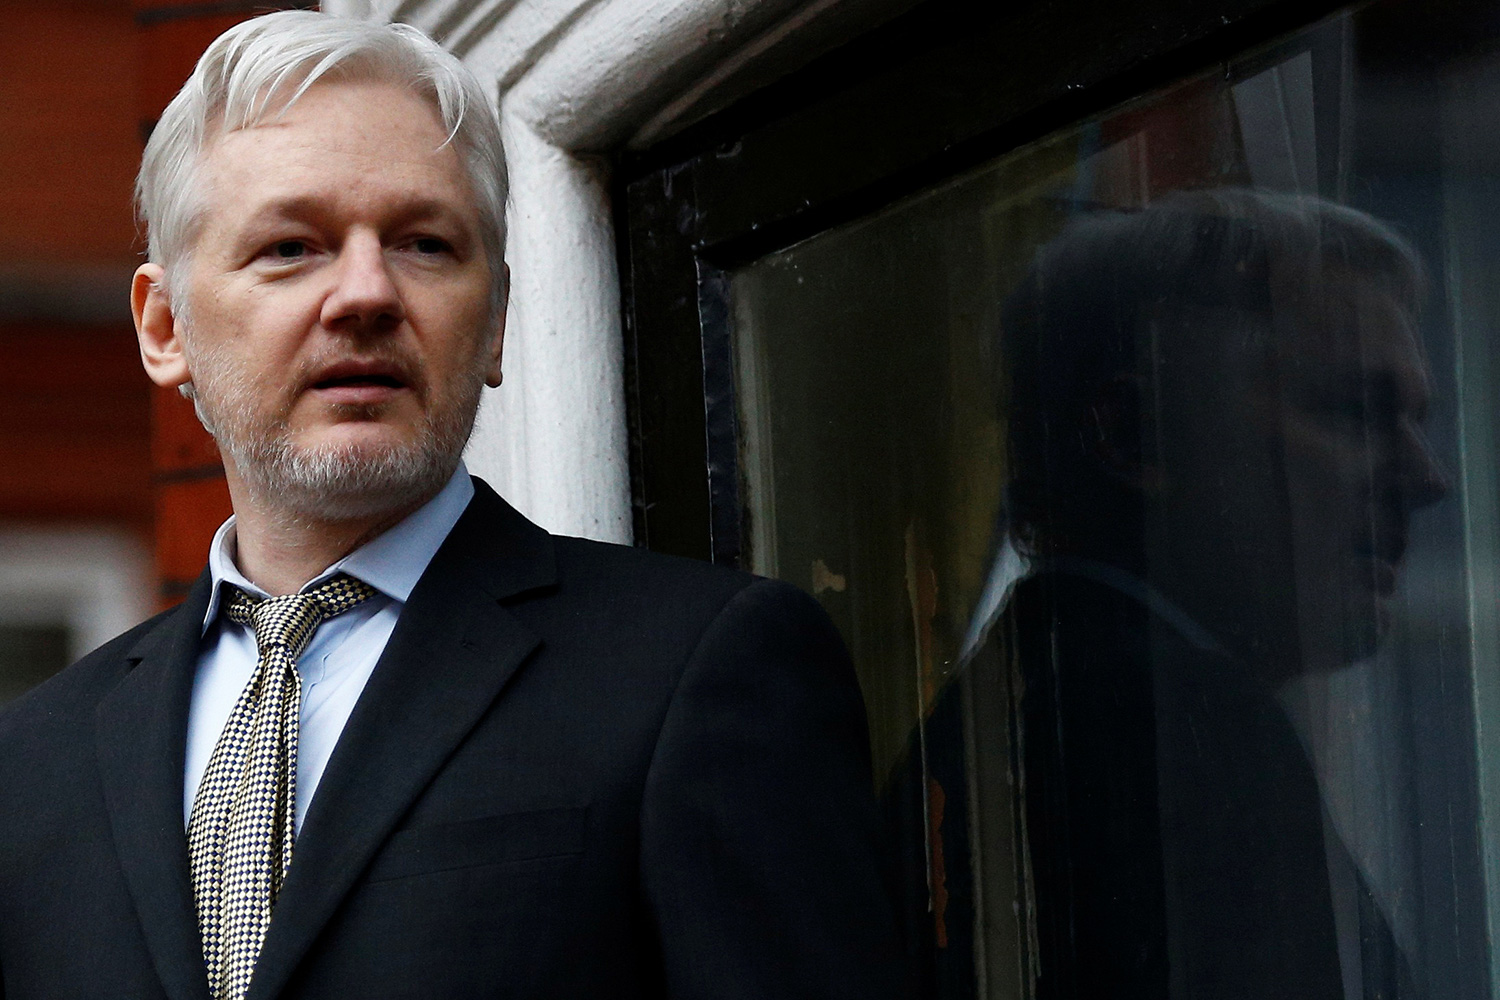 Julian Assange, "preparado" para su extradición a EEUU si se garantizan sus derechos